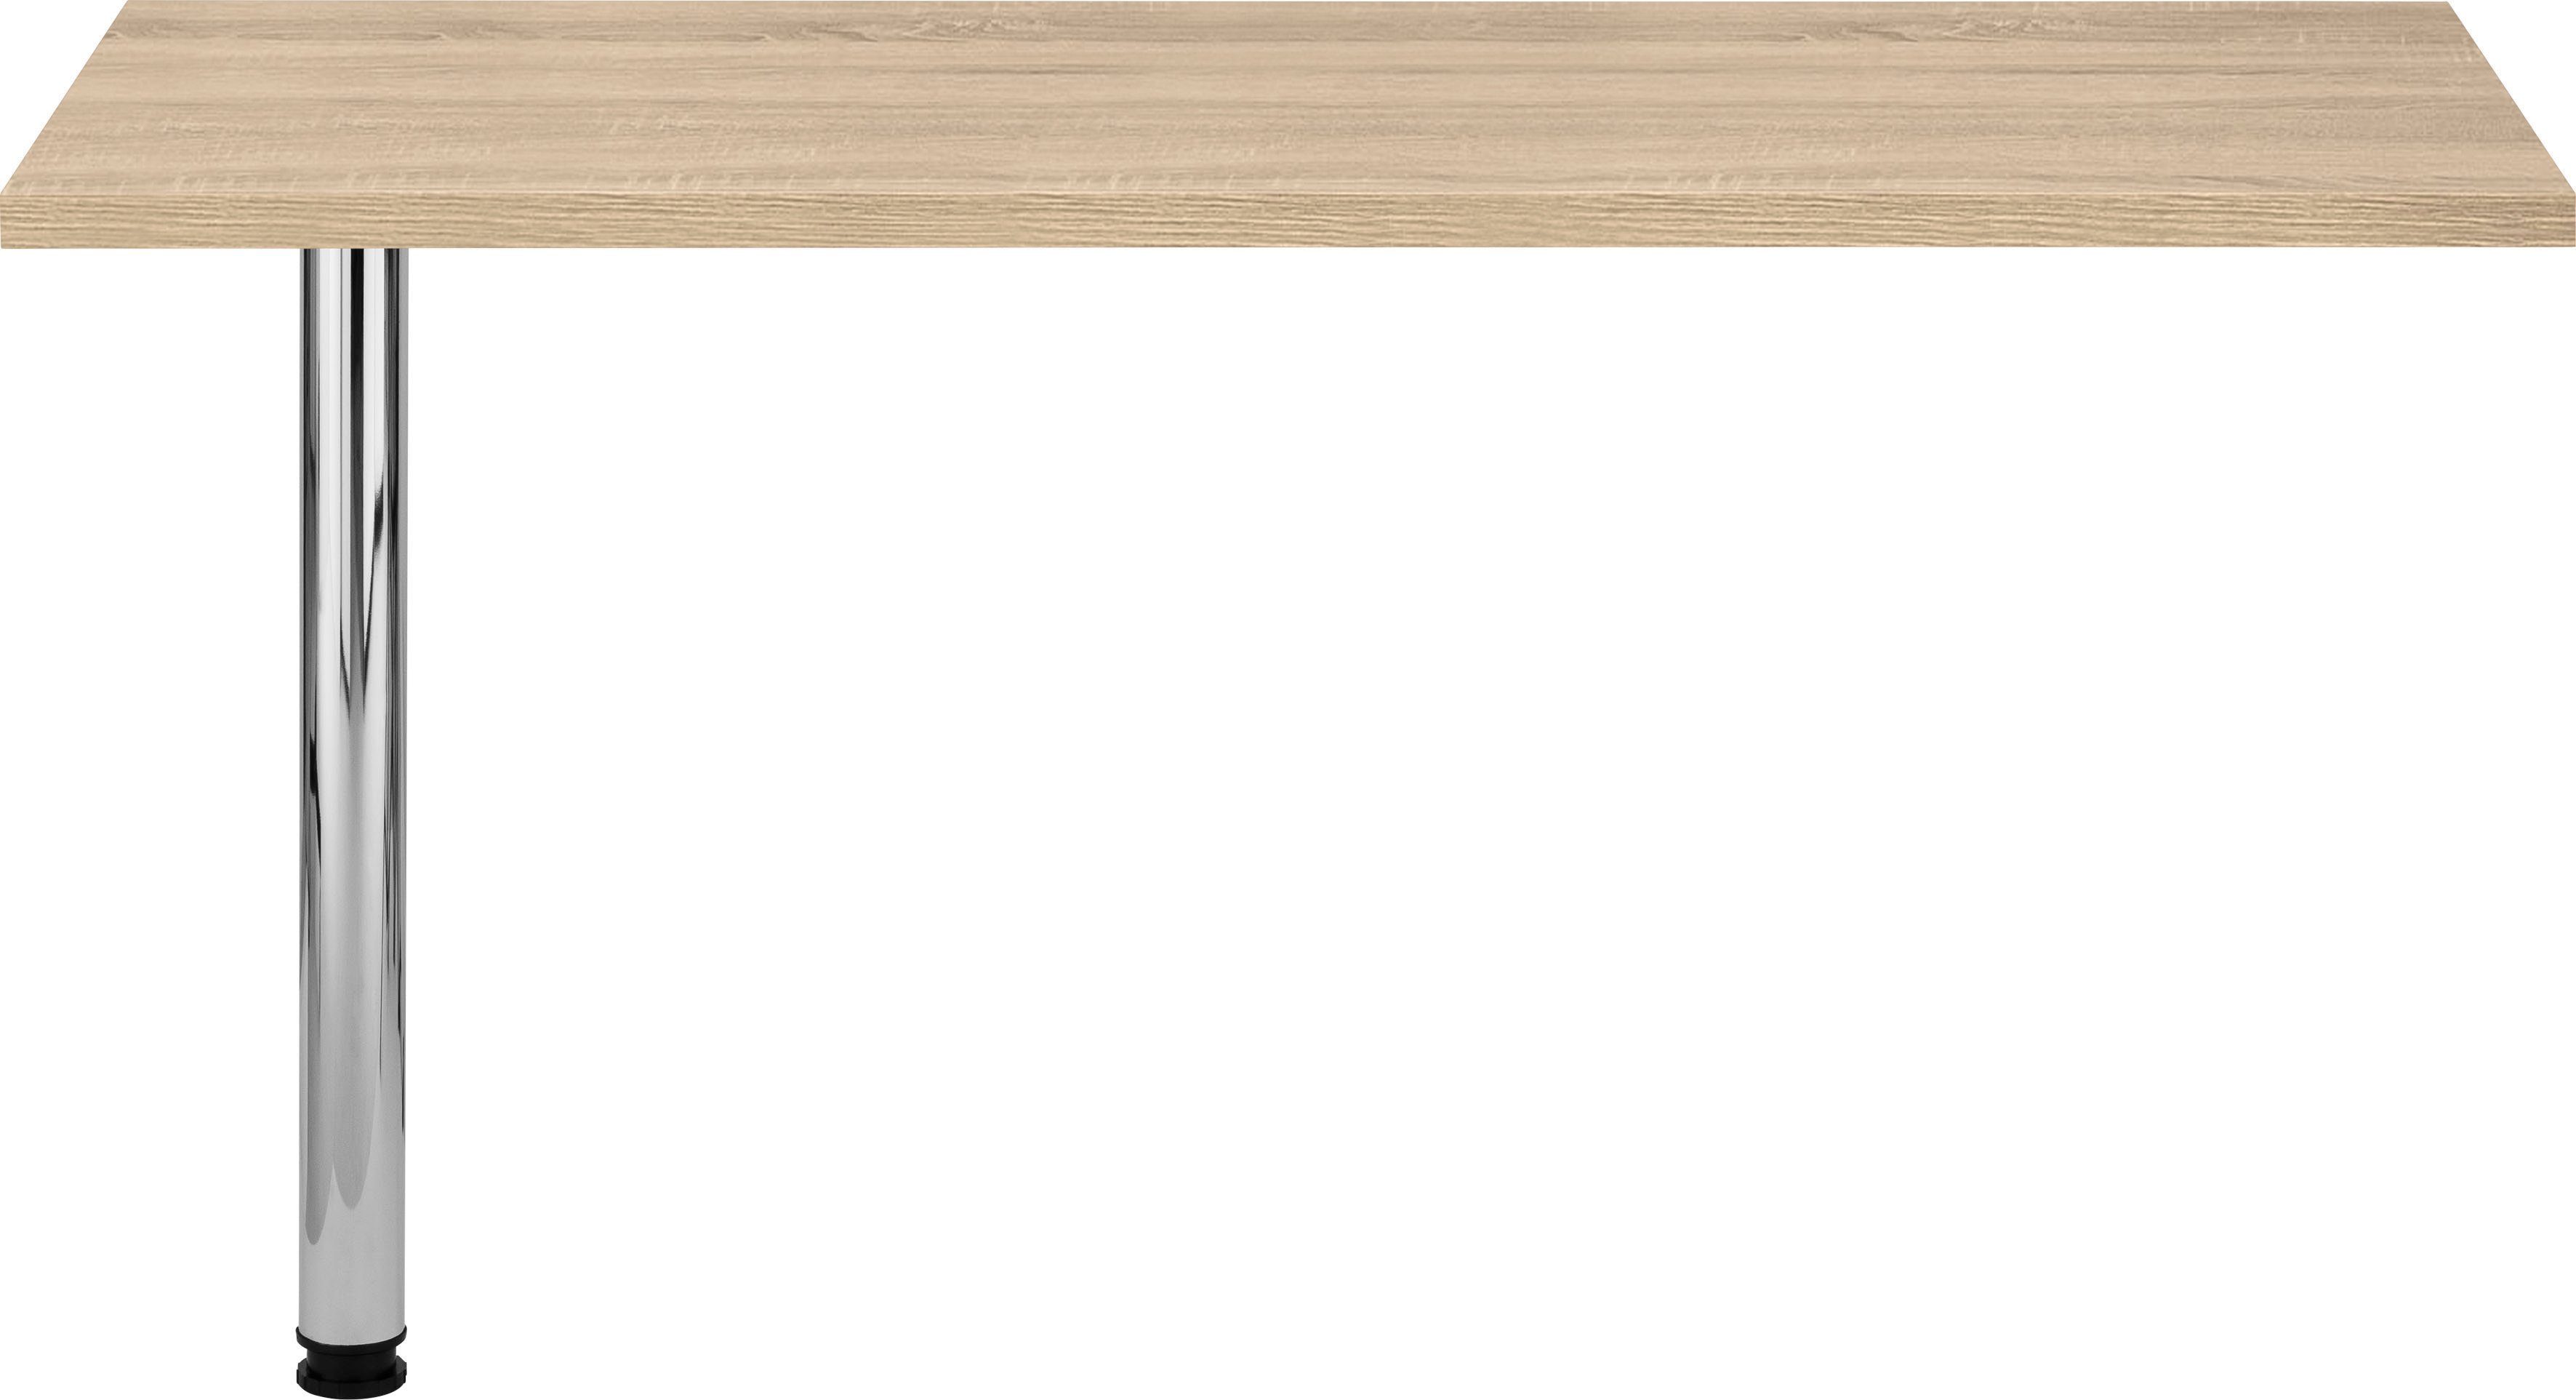 HELD MÖBEL Tresentisch Virginia, 138 cm breit, ideal für kleine Küchen eiche sonoma | Stehtische